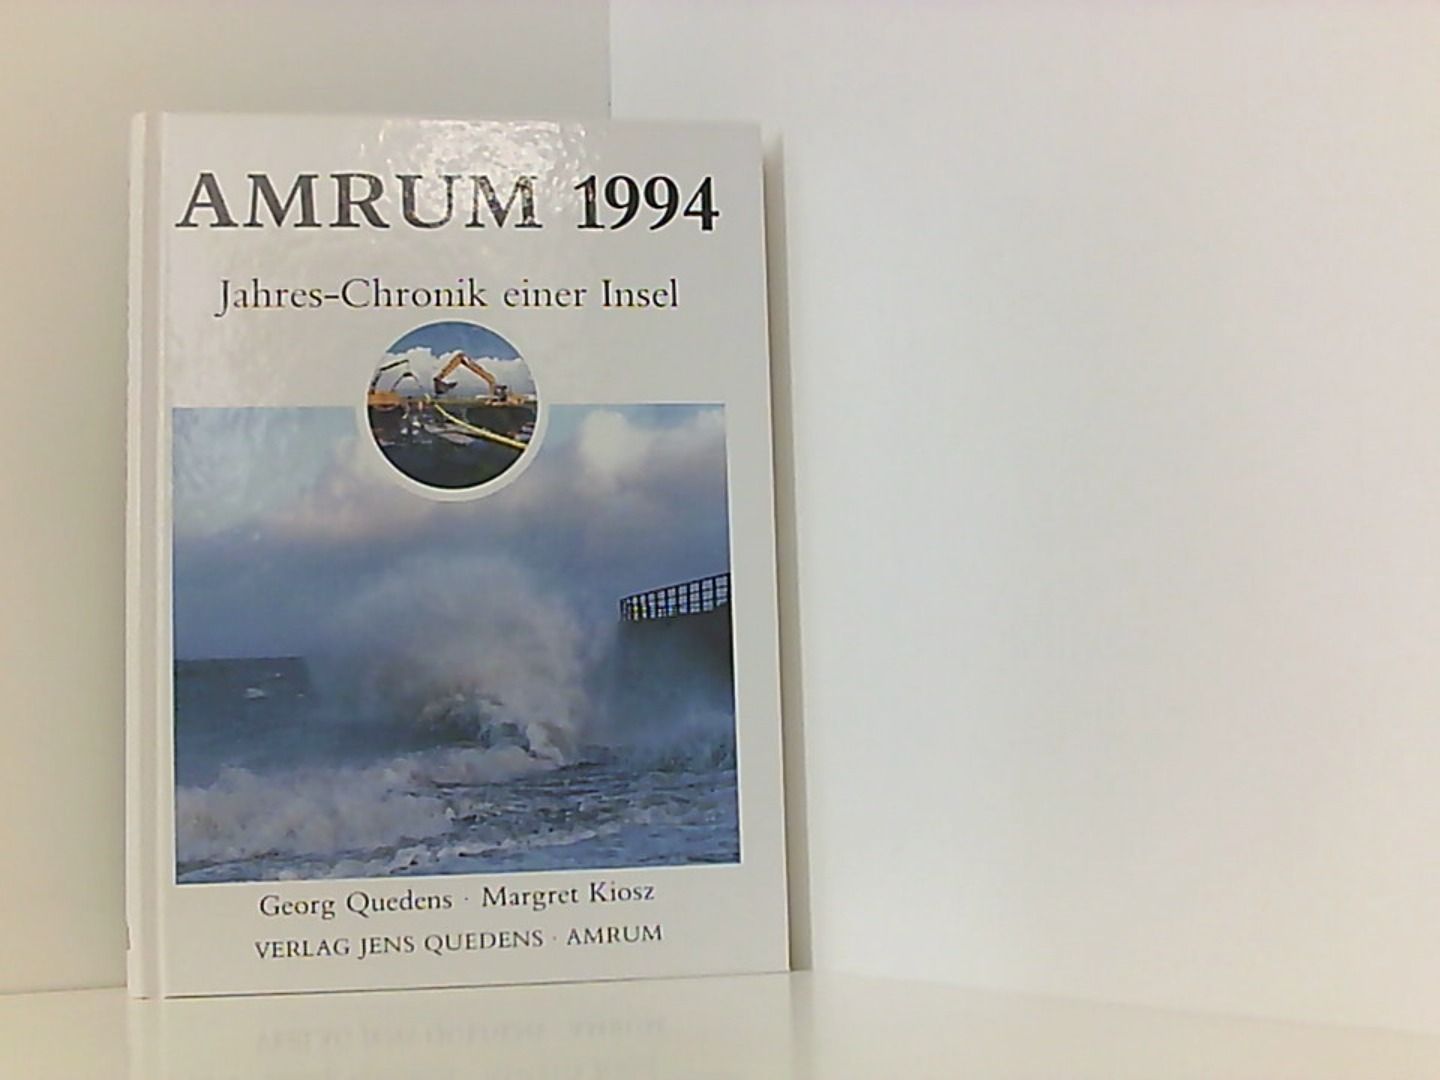 Amrum. Jahreschronik einer Insel / Amrum 1994: Jahres-Chronik einer Insel - Oömrang, Ferian, Georg Quedens Margret Kiosz  u. a.